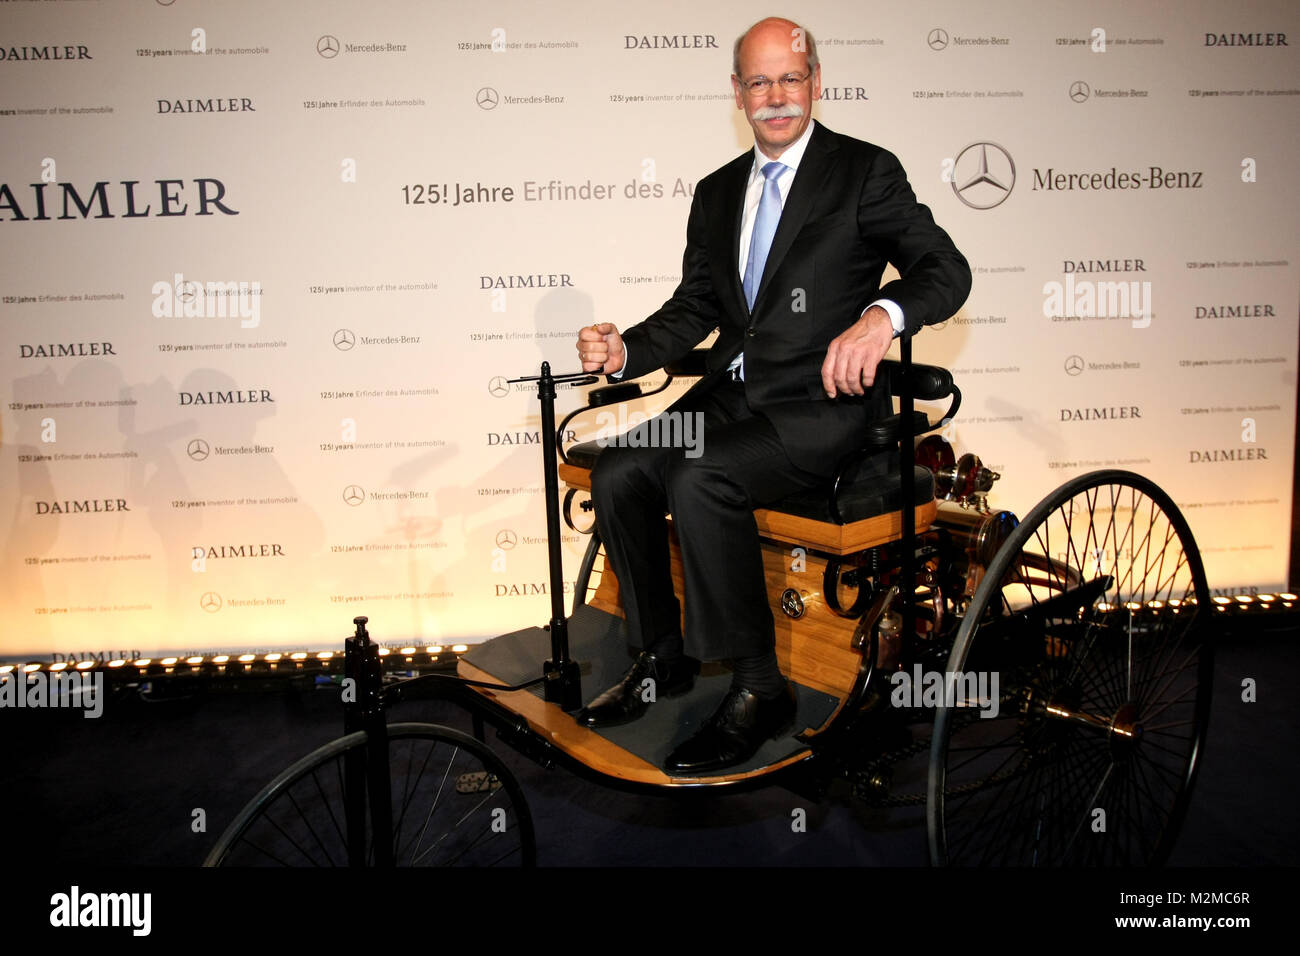 GERMANY, STUTTGART - 29. JANUAR / Mercedes-Benz-Museum / Festakt 125 Jahre  Erfinder des Automobils / Dr. Dieter Zetsche posiert auf einem Automobil  Stock Photo - Alamy